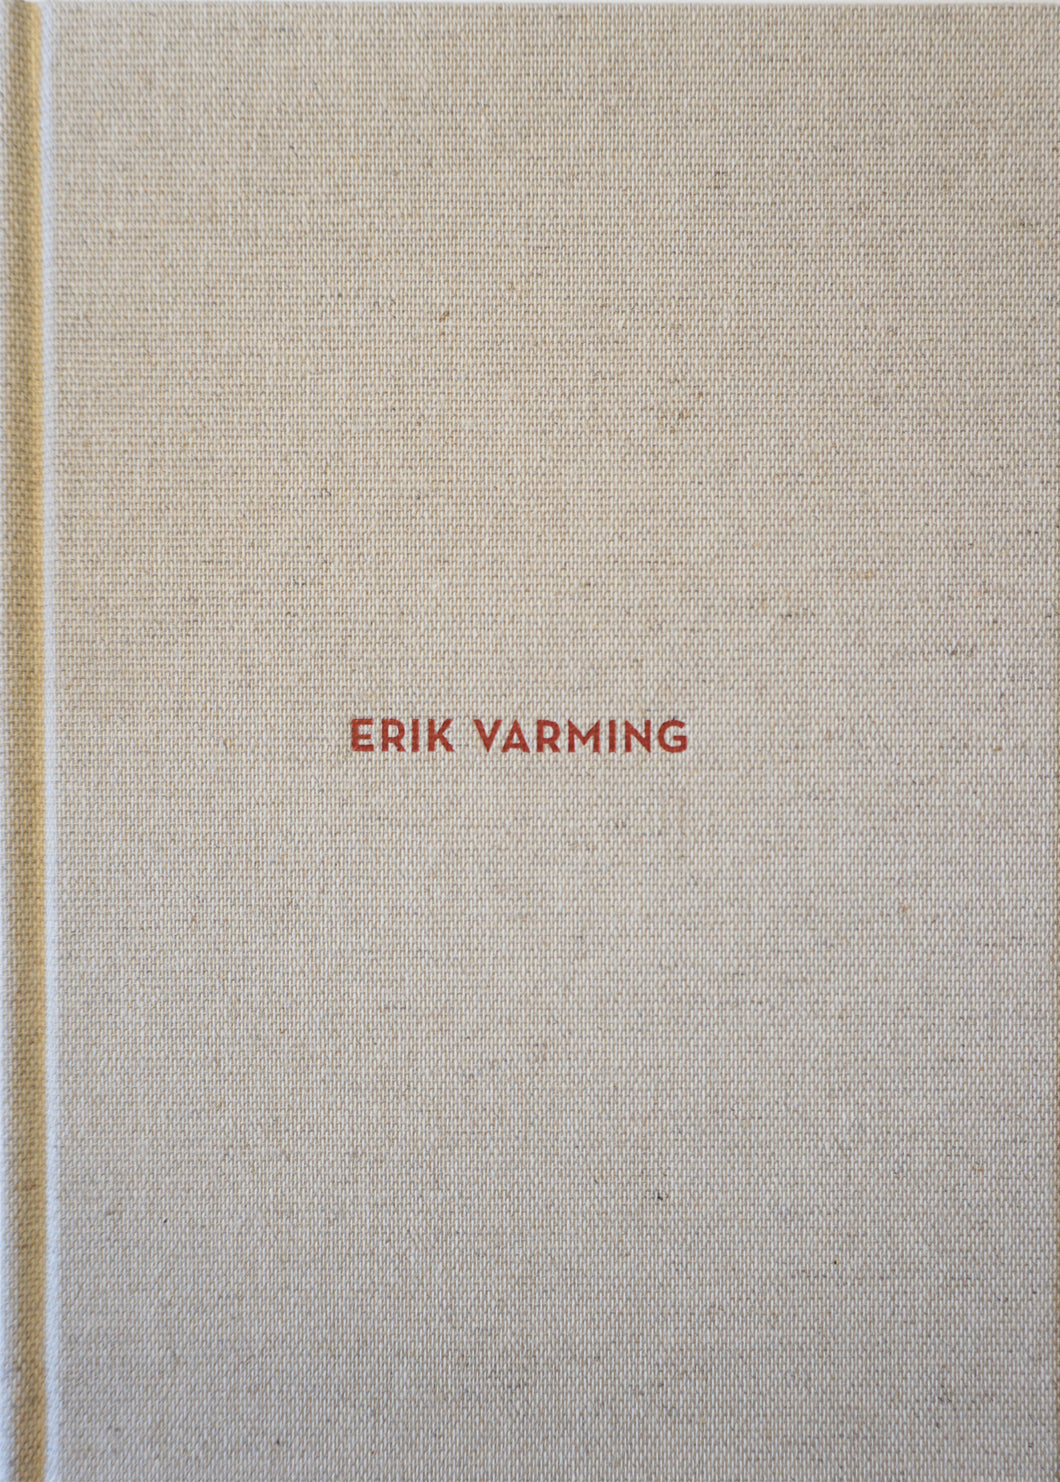 Katalogbog, Erik Varming